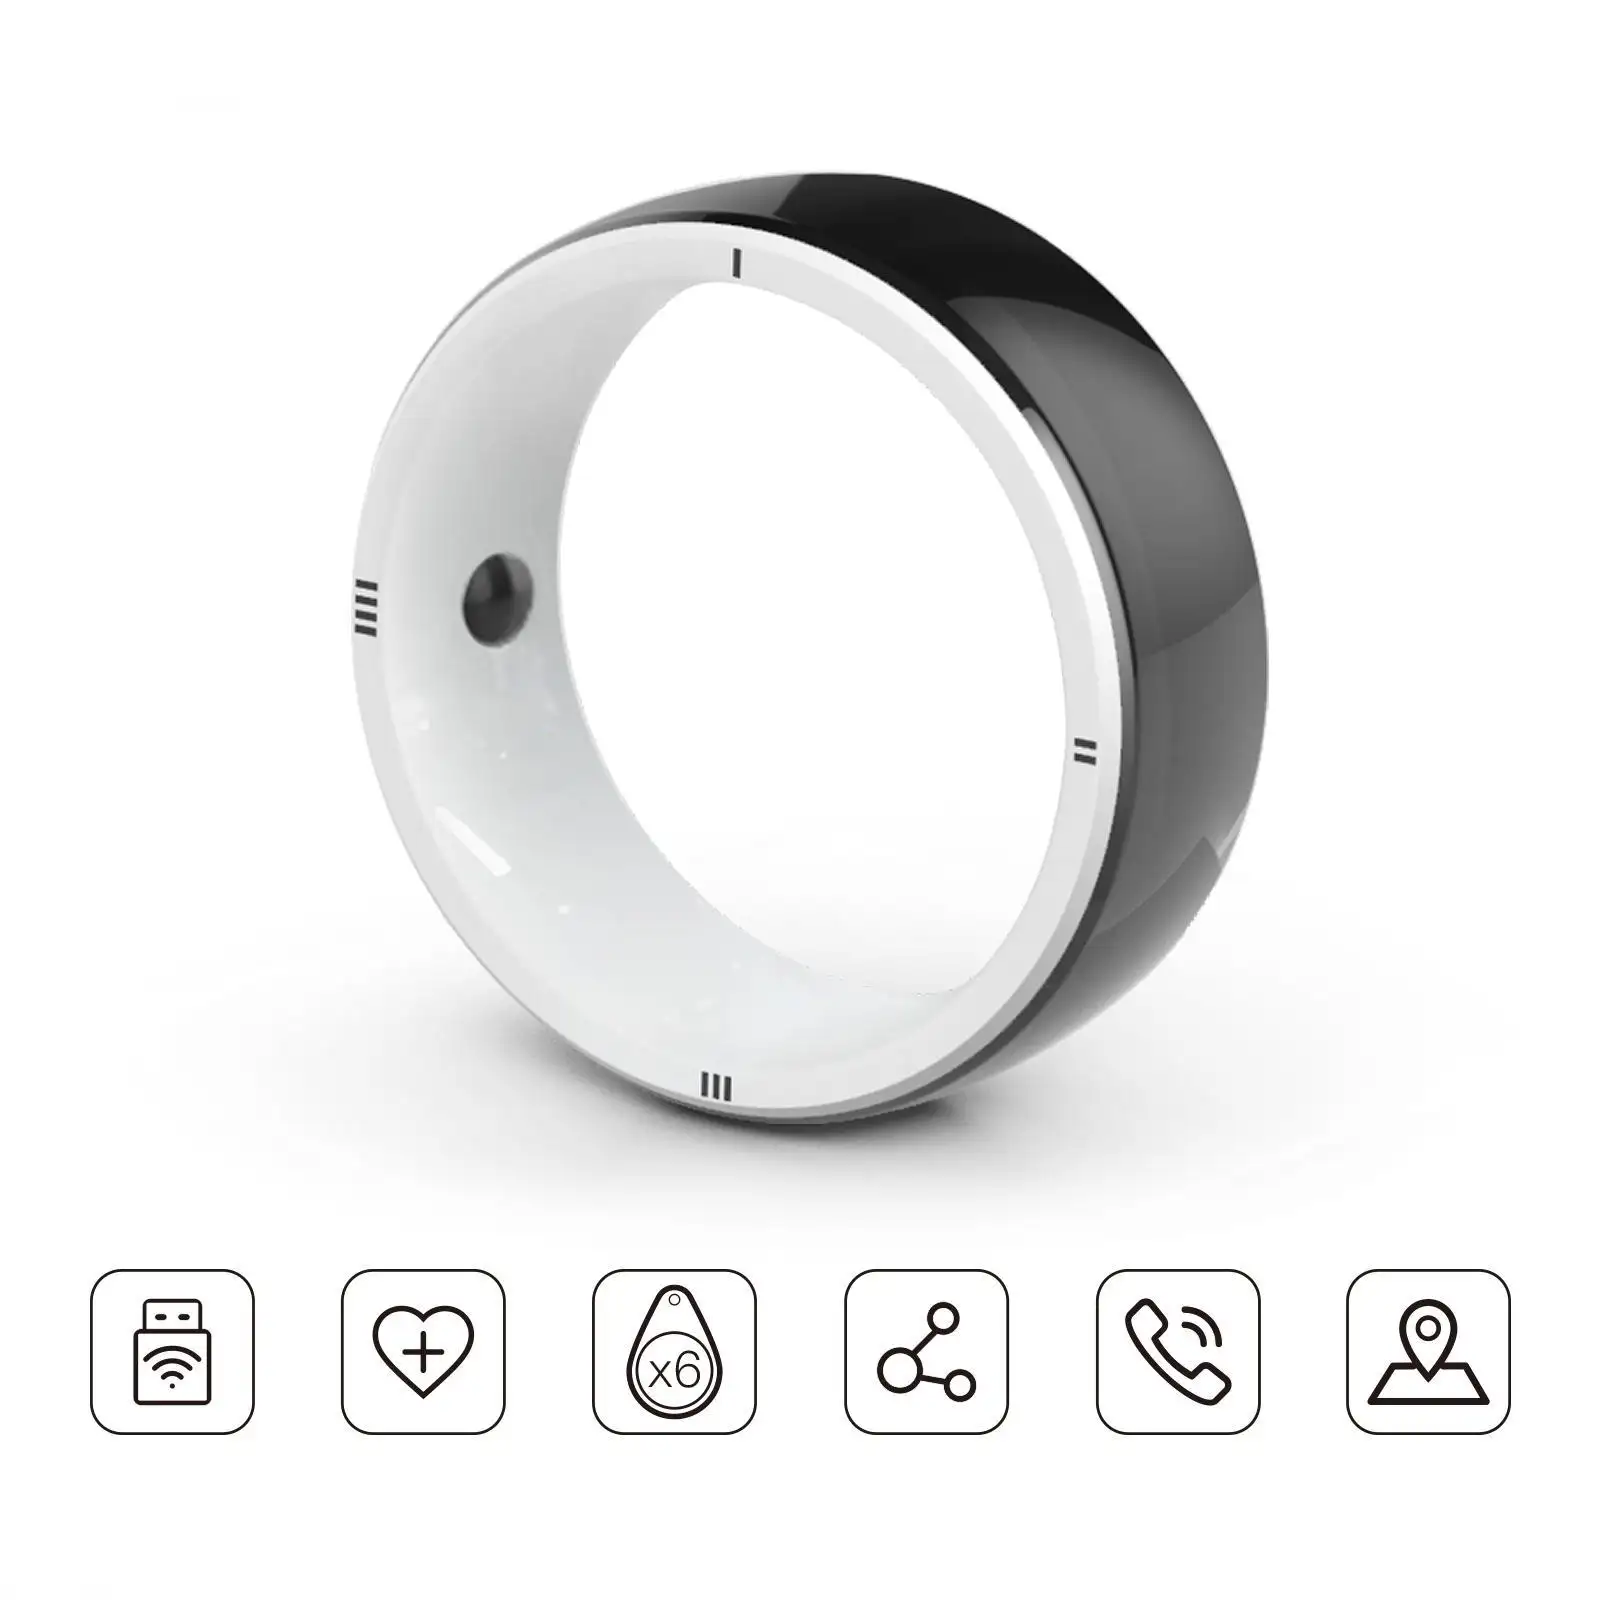 JAKCOM R5 Smart Ring New Smart Ring Super valeur que le cadre en toile monochrome davinci iq prise de courant a4 aslay song m2